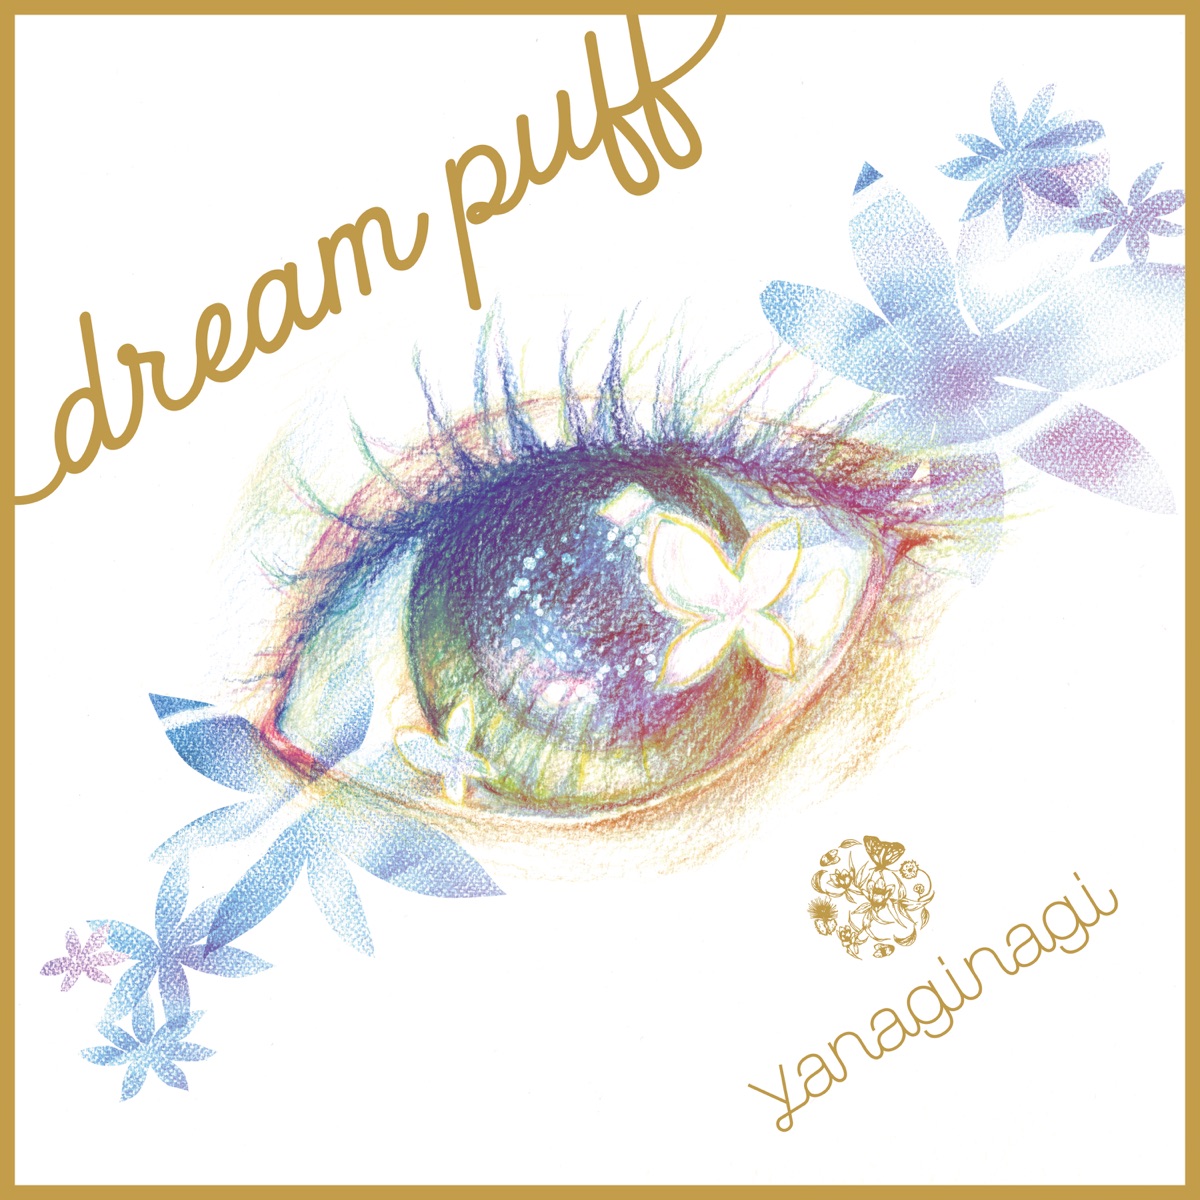 『やなぎなぎ - dream puff 歌詞』収録の『dream puff』ジャケット